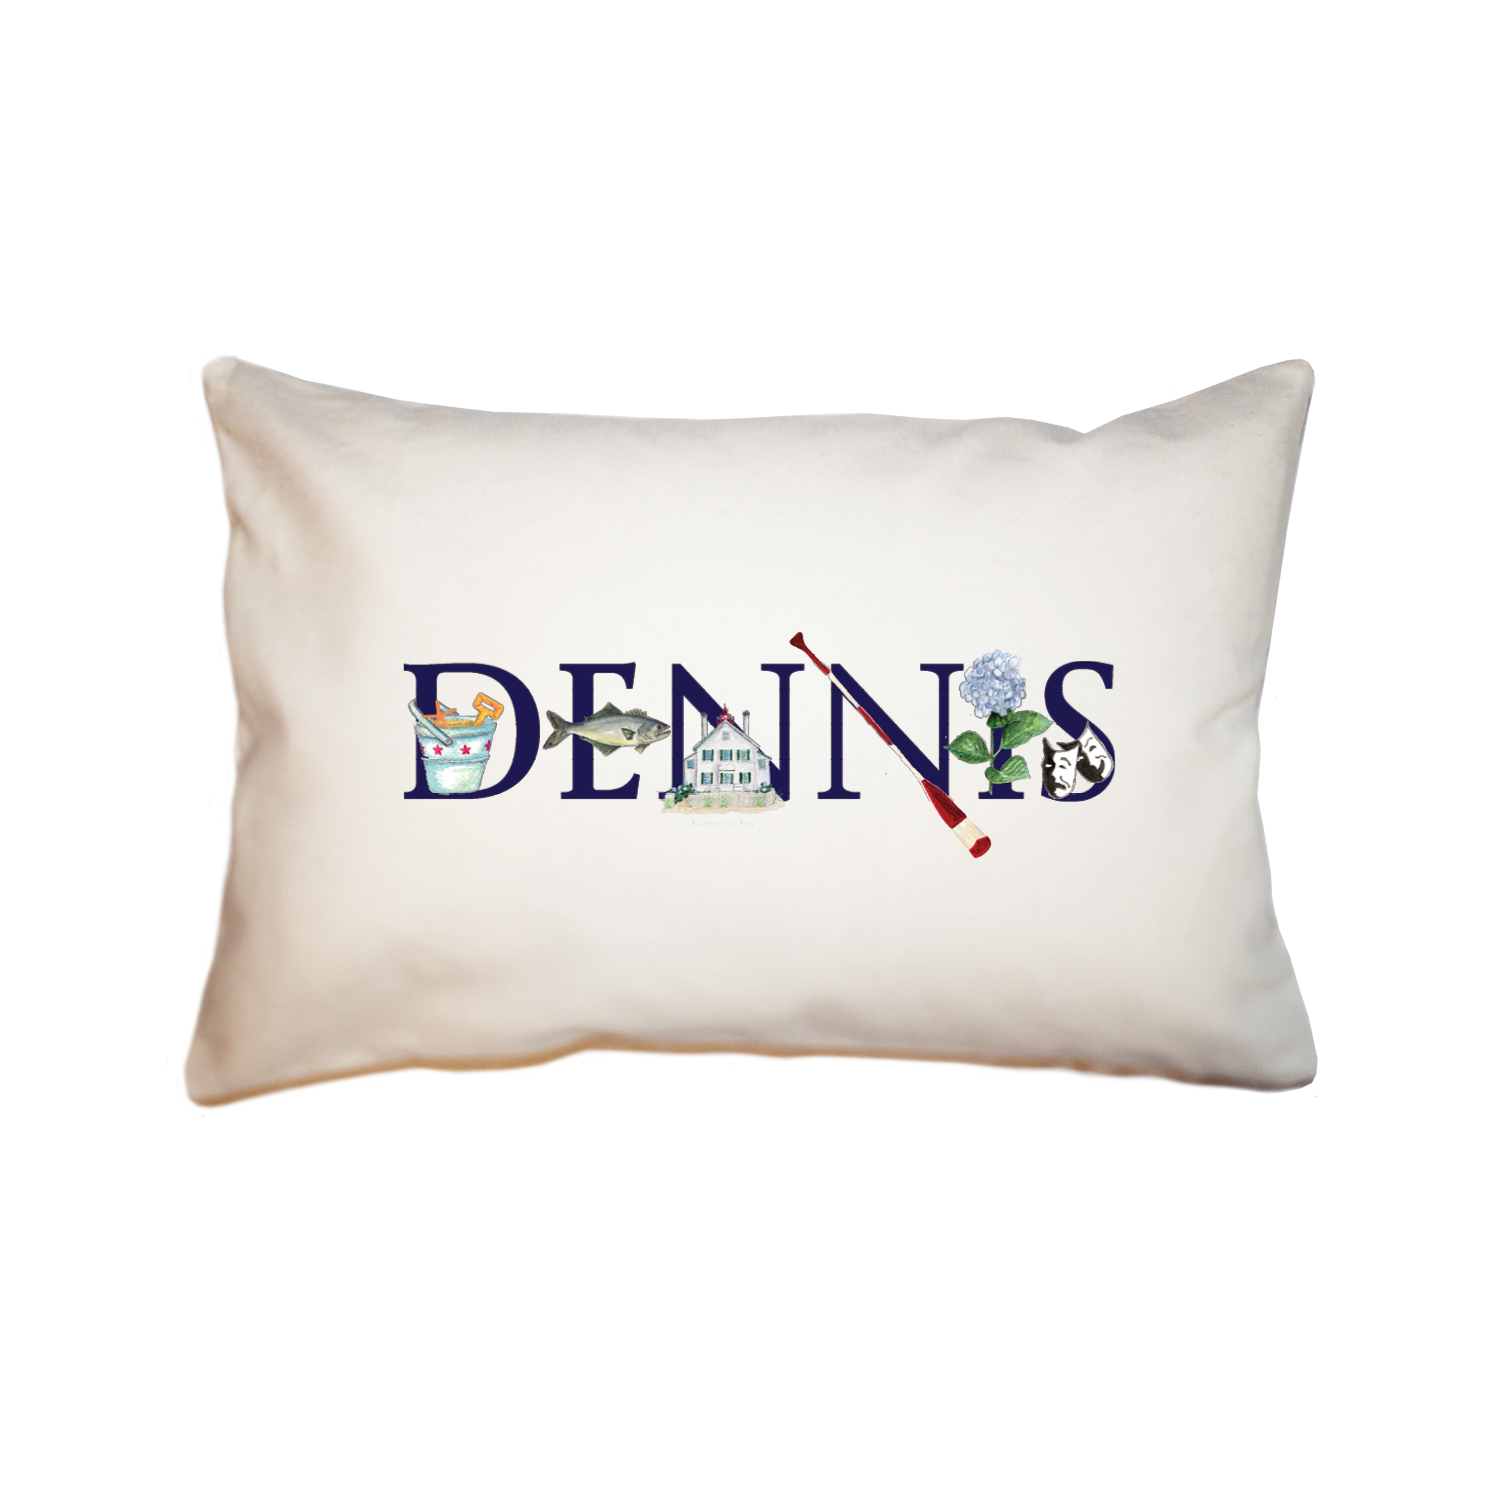 dennis large rectangle pillow